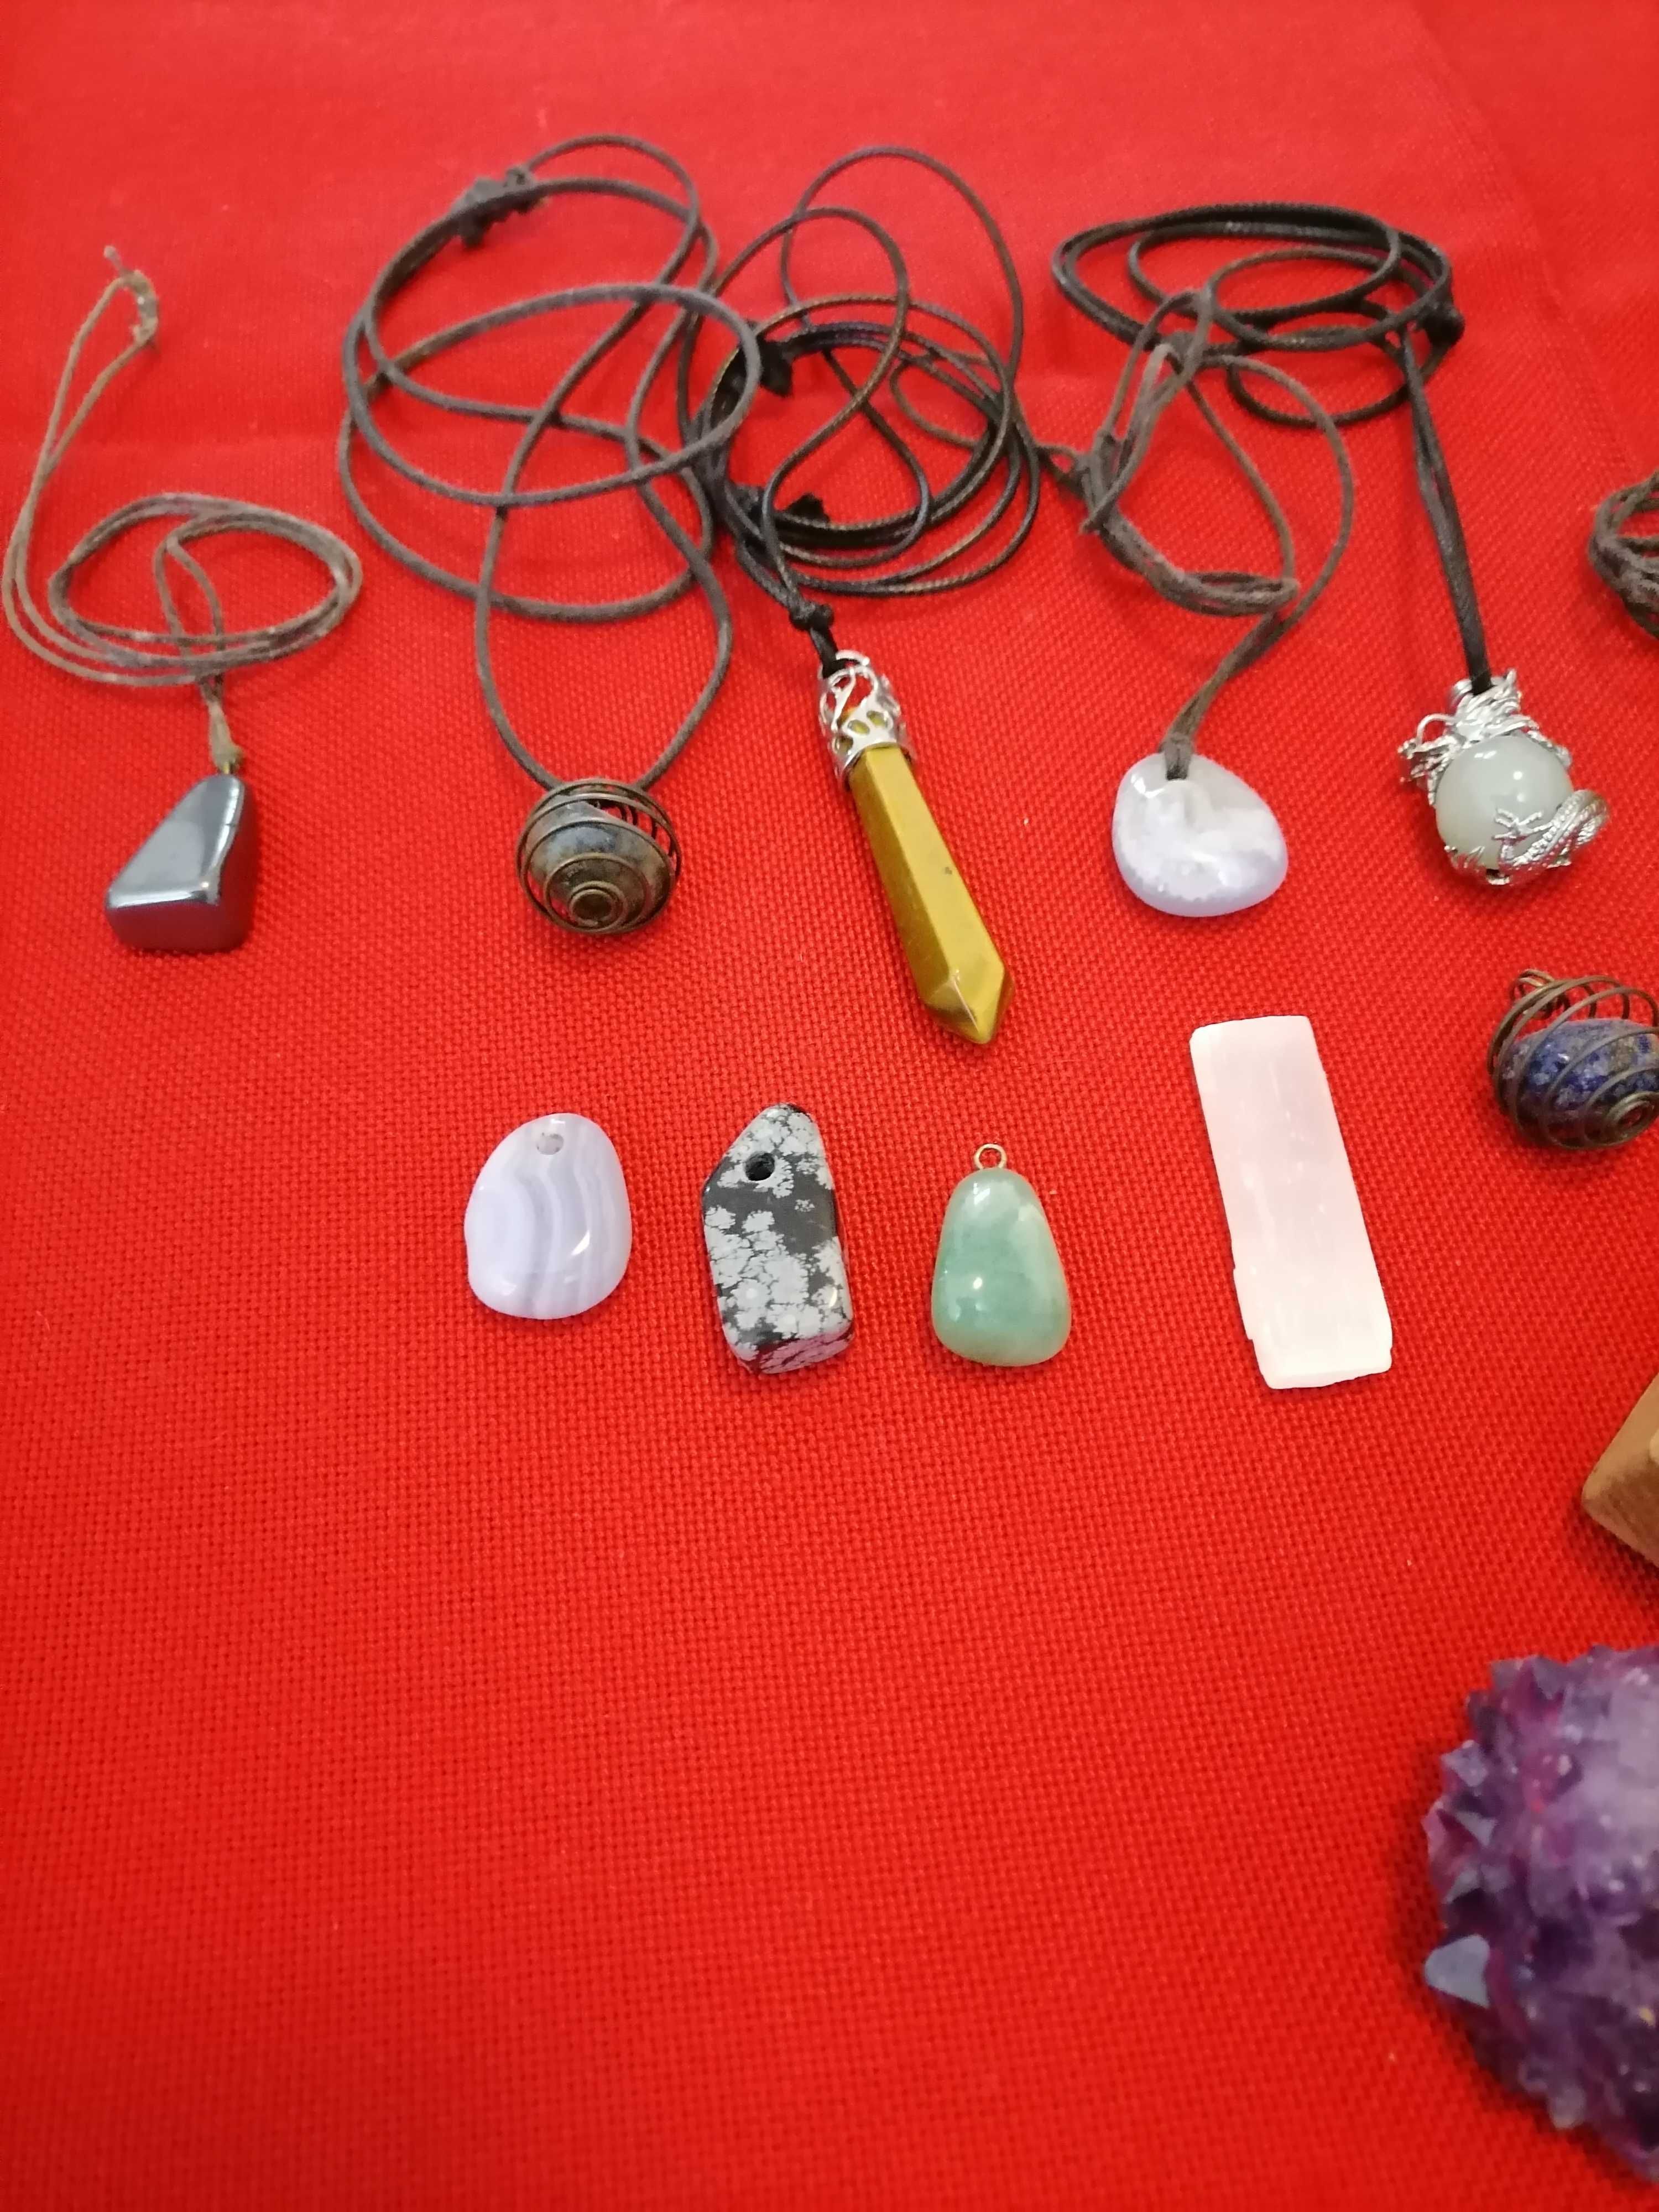 Pedras naturais/minerais vários tipos